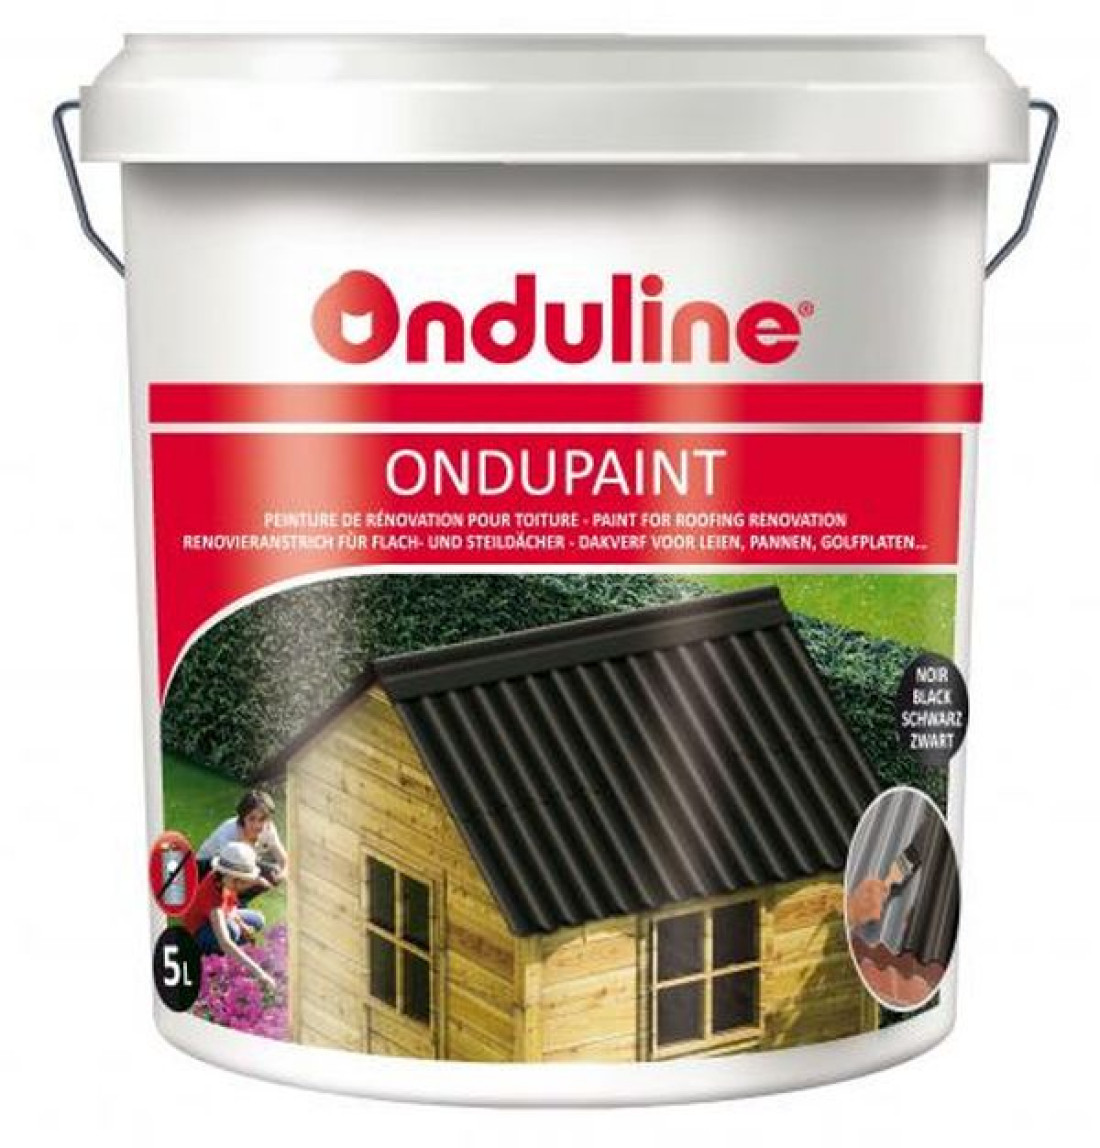 Wodno-akrylowa farba dyspersyjna do renowacji i konserwacji dachu ONDUPAINT ®